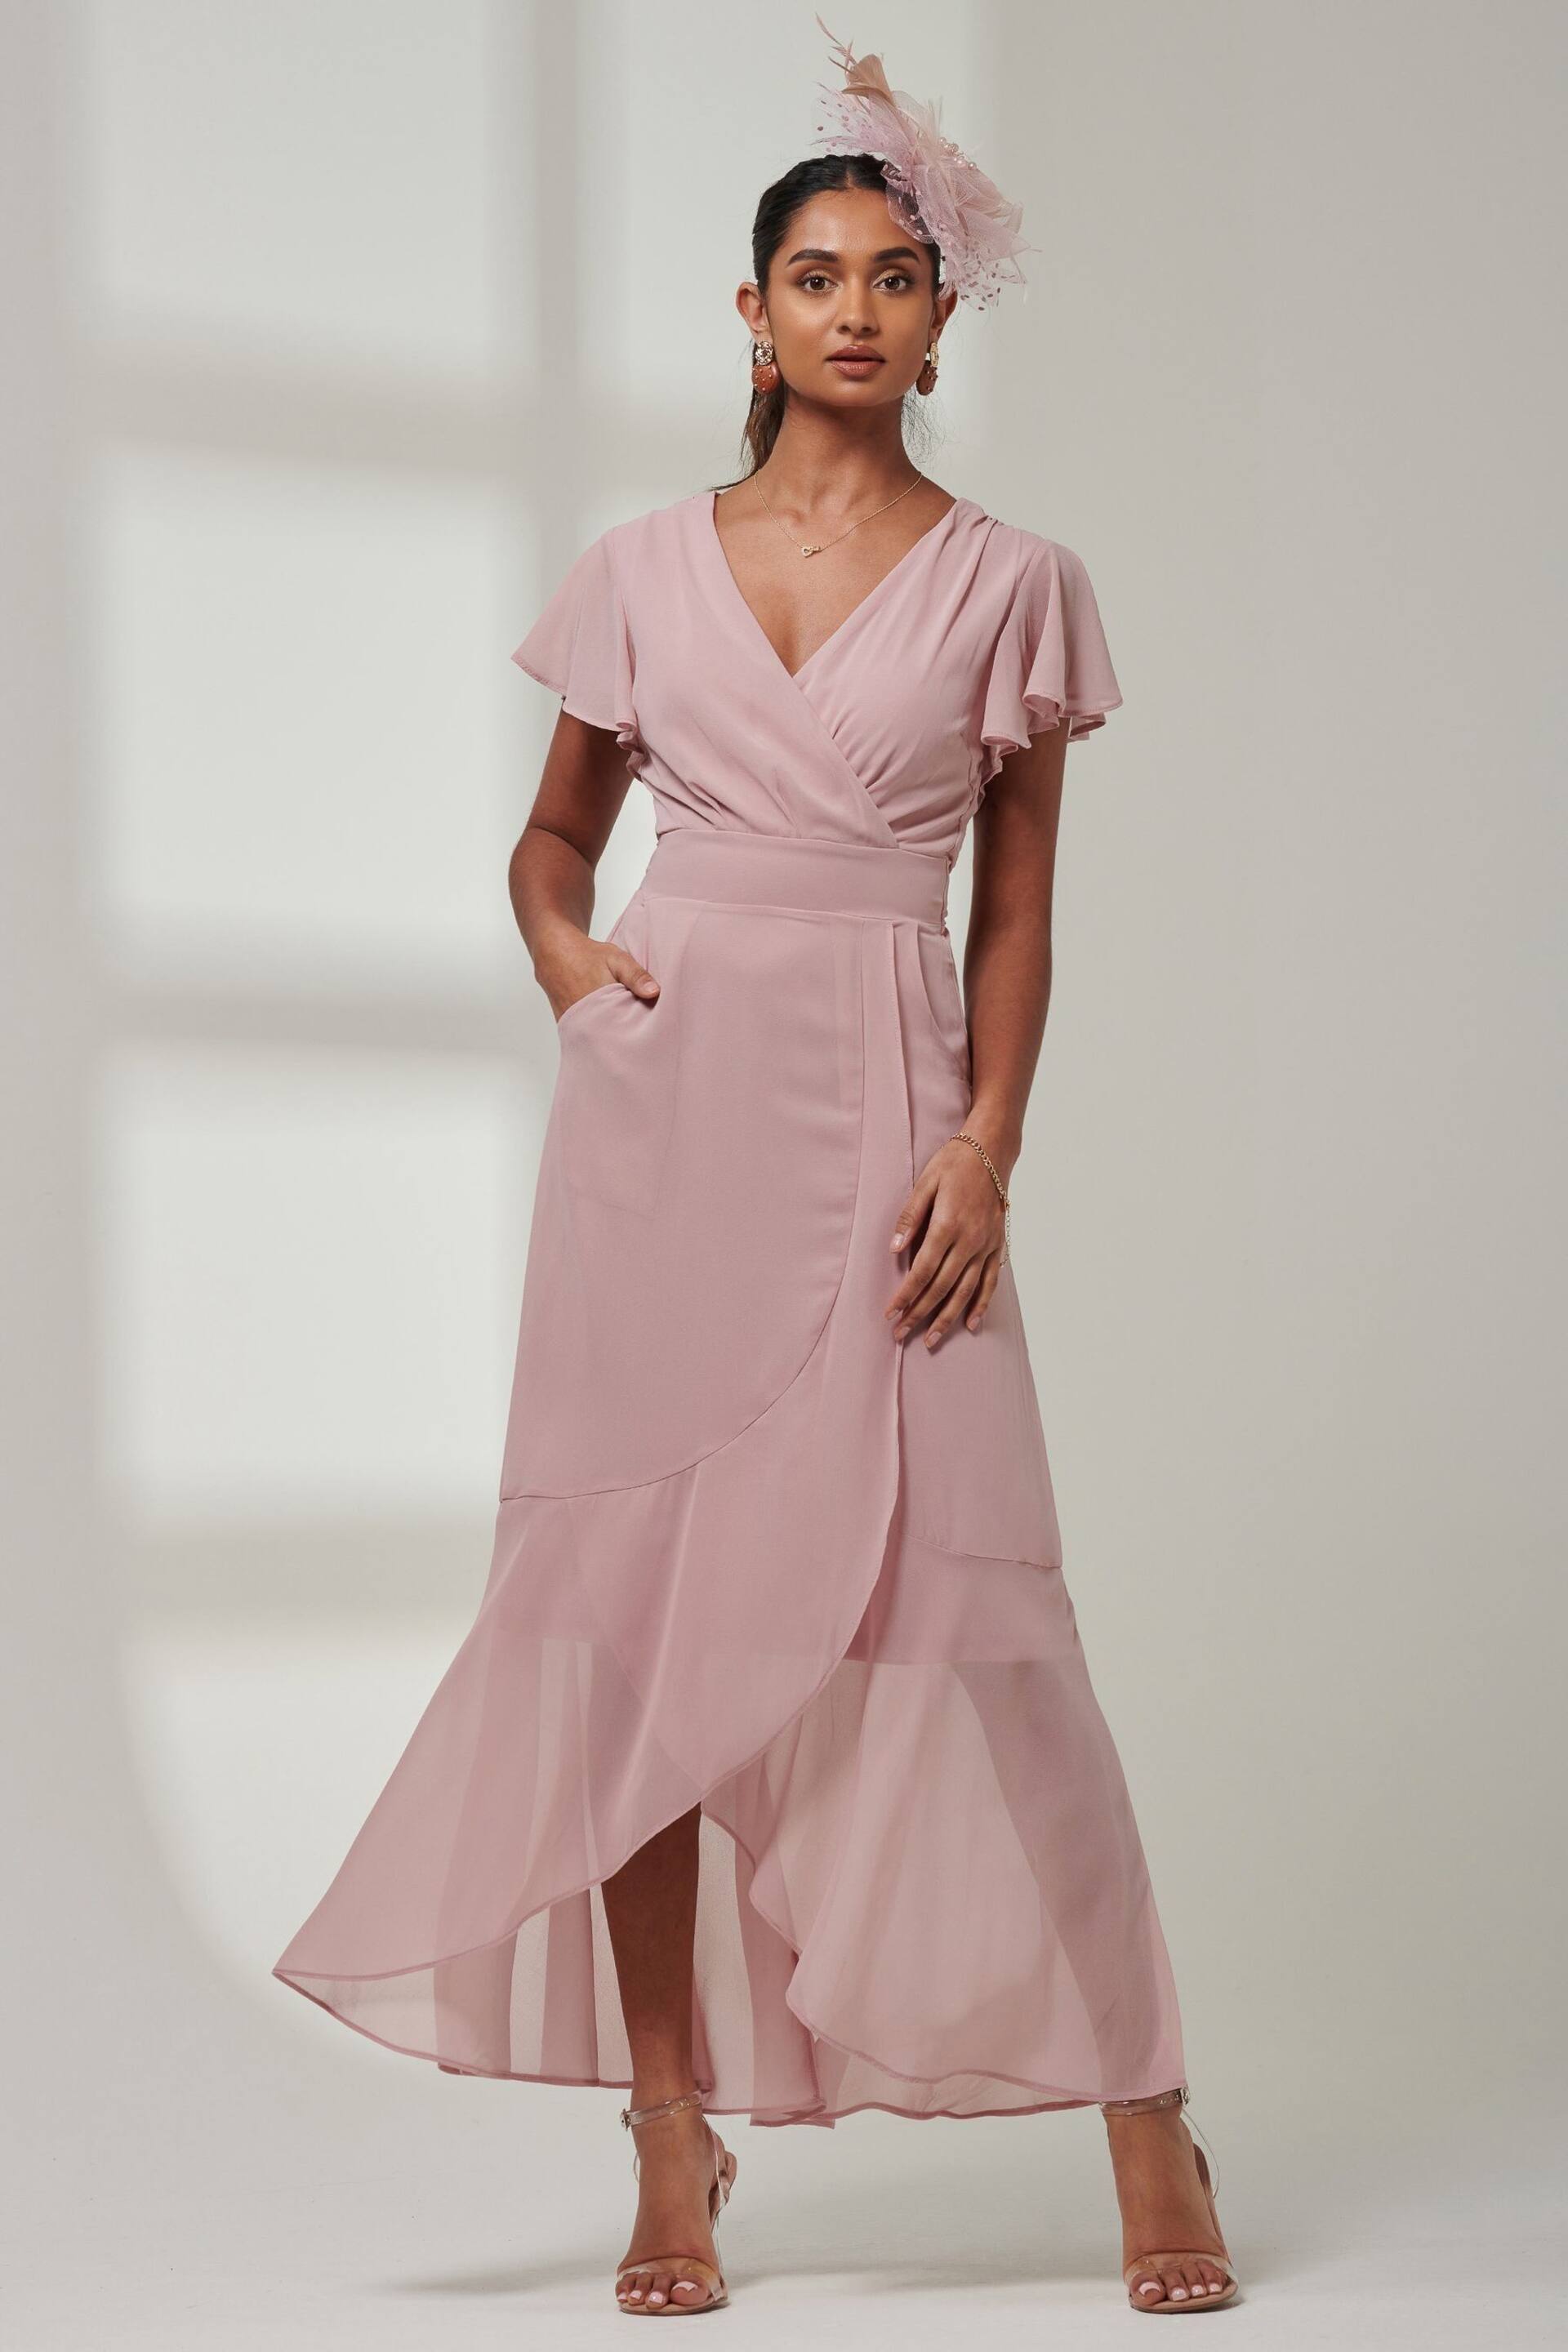 Jolie Moi Pink Vicky Chiffon Frill Maxi Dress - Image 1 of 6